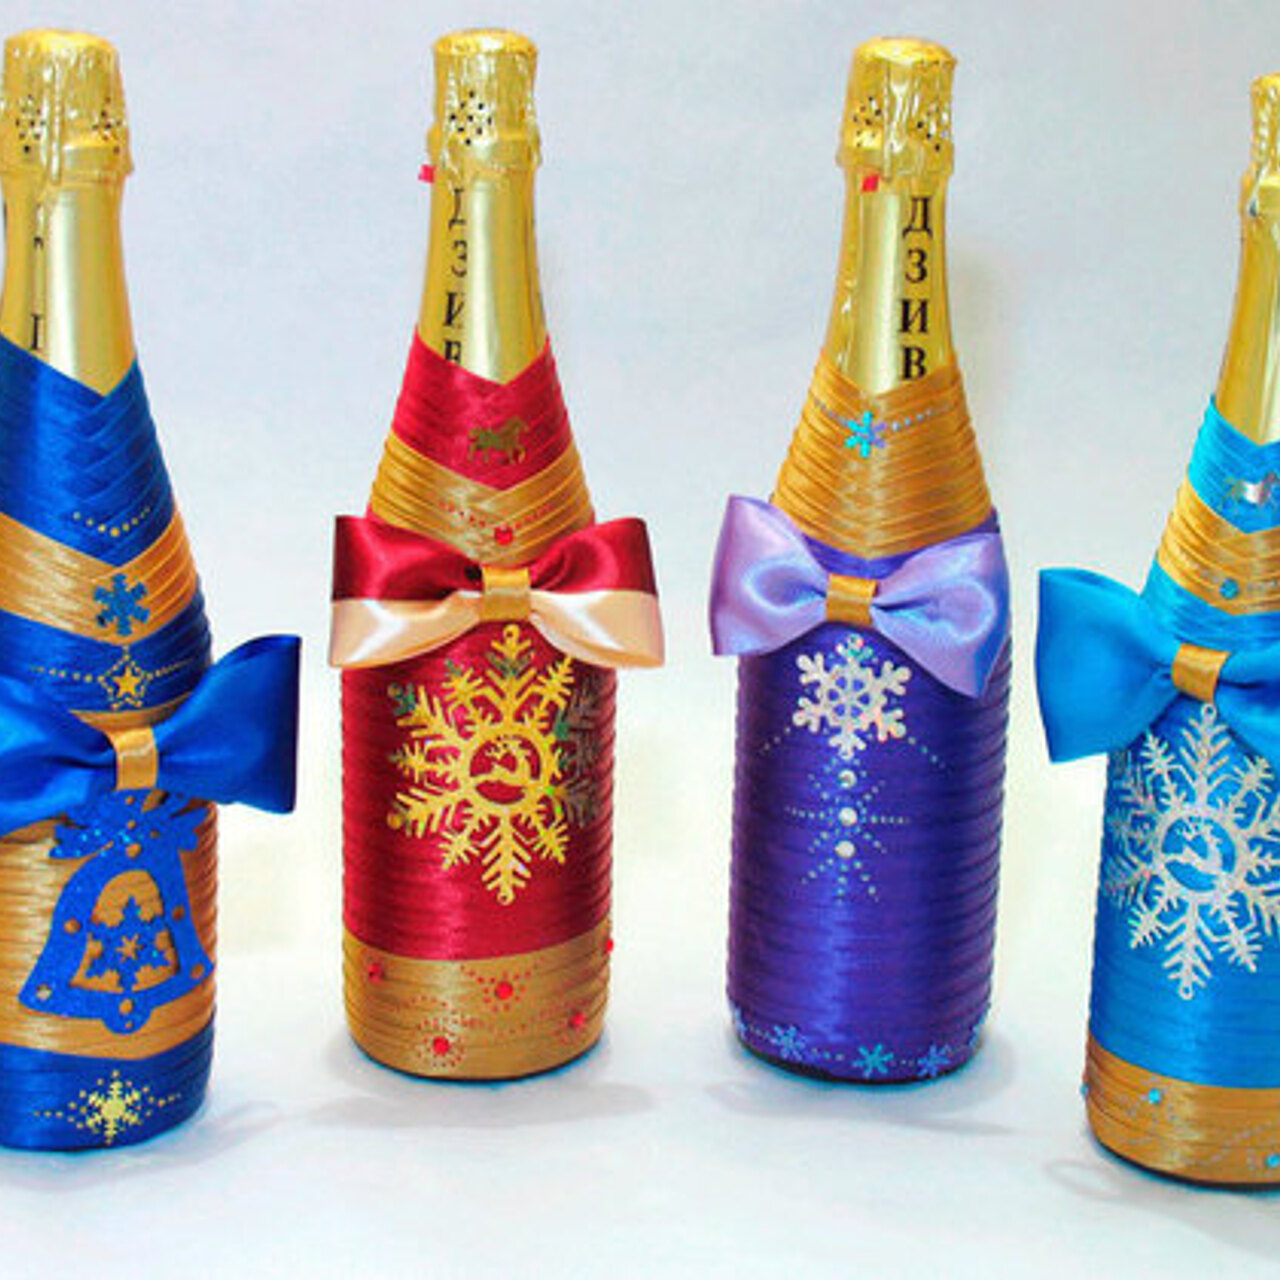 Сделать бутылку шампанского. Украшение бутылок. Украсить бутылку шампанского на новый год. Новогодний декор шампанского. Новогодняя бутылка шампанского.